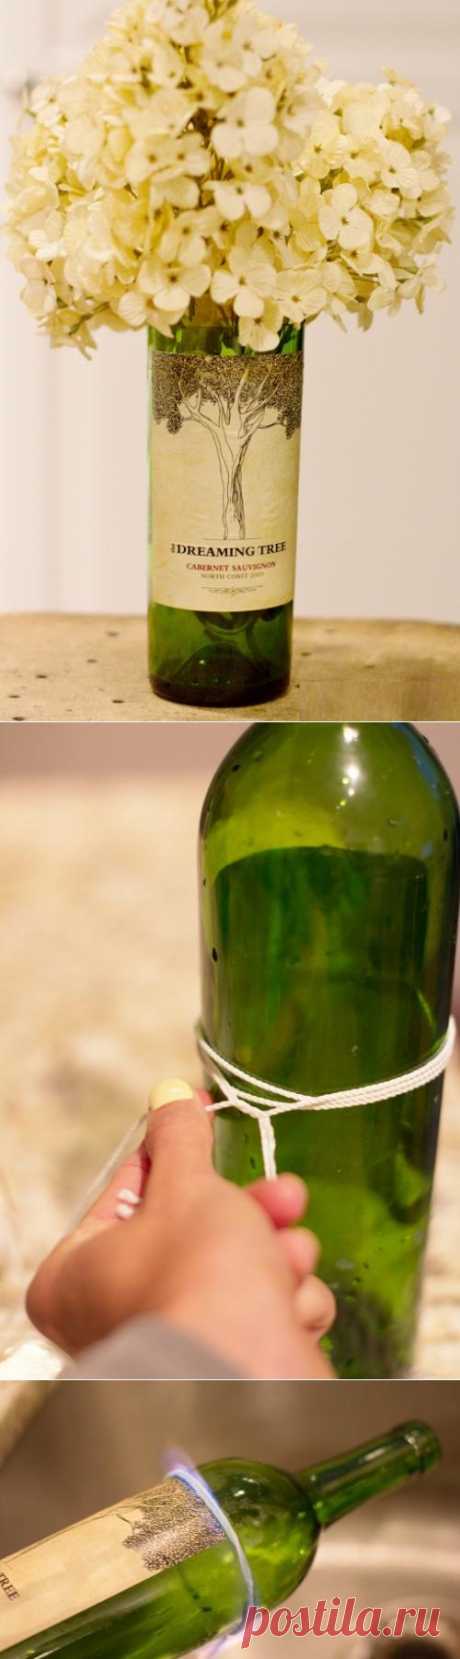 отрезание горлышка у бутылки